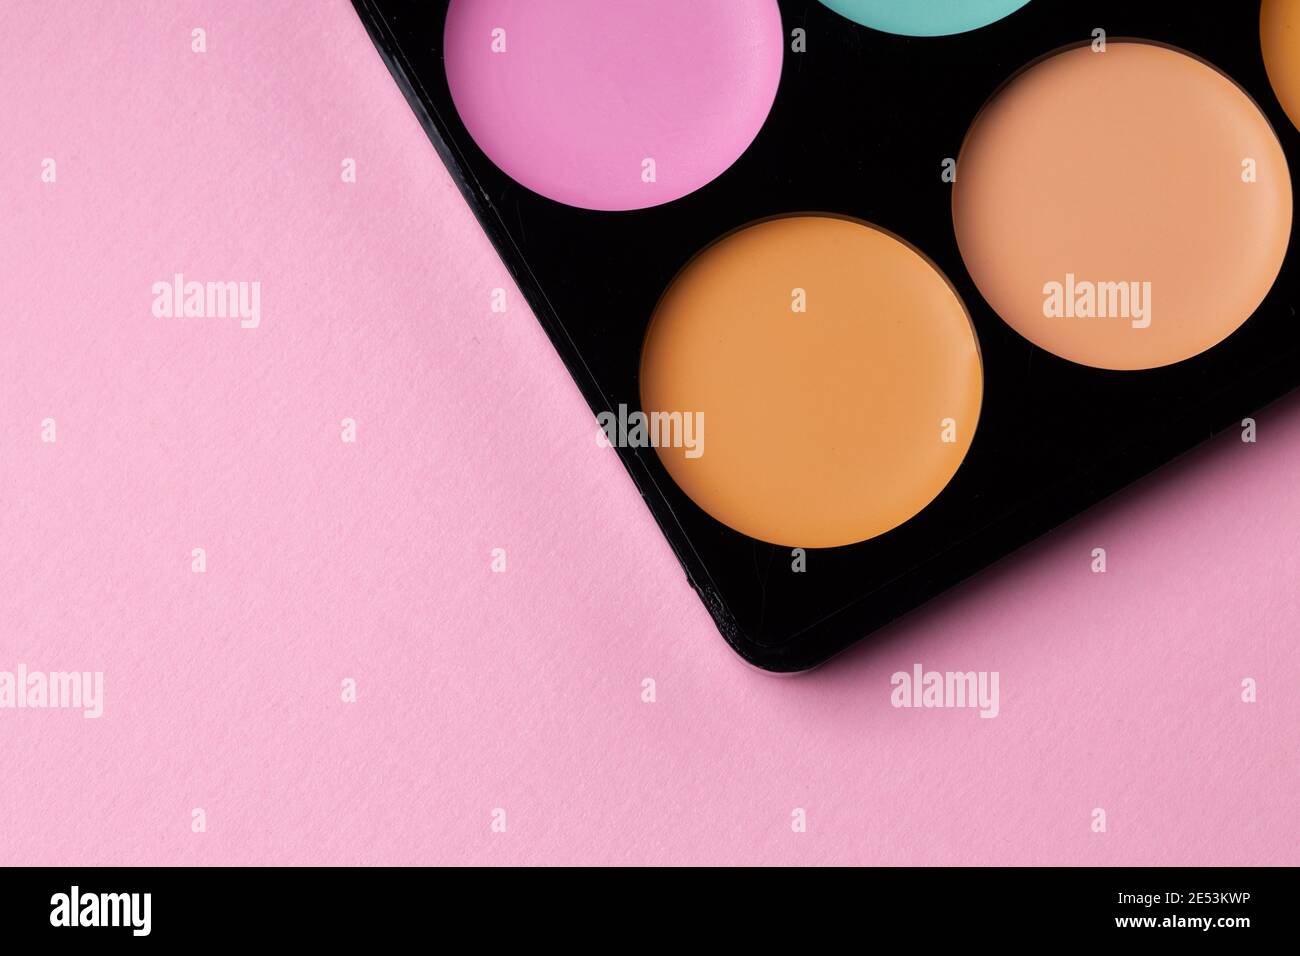 Kosmetik für Gesicht Teint auf rosa Hintergrund Stockfotografie - Alamy